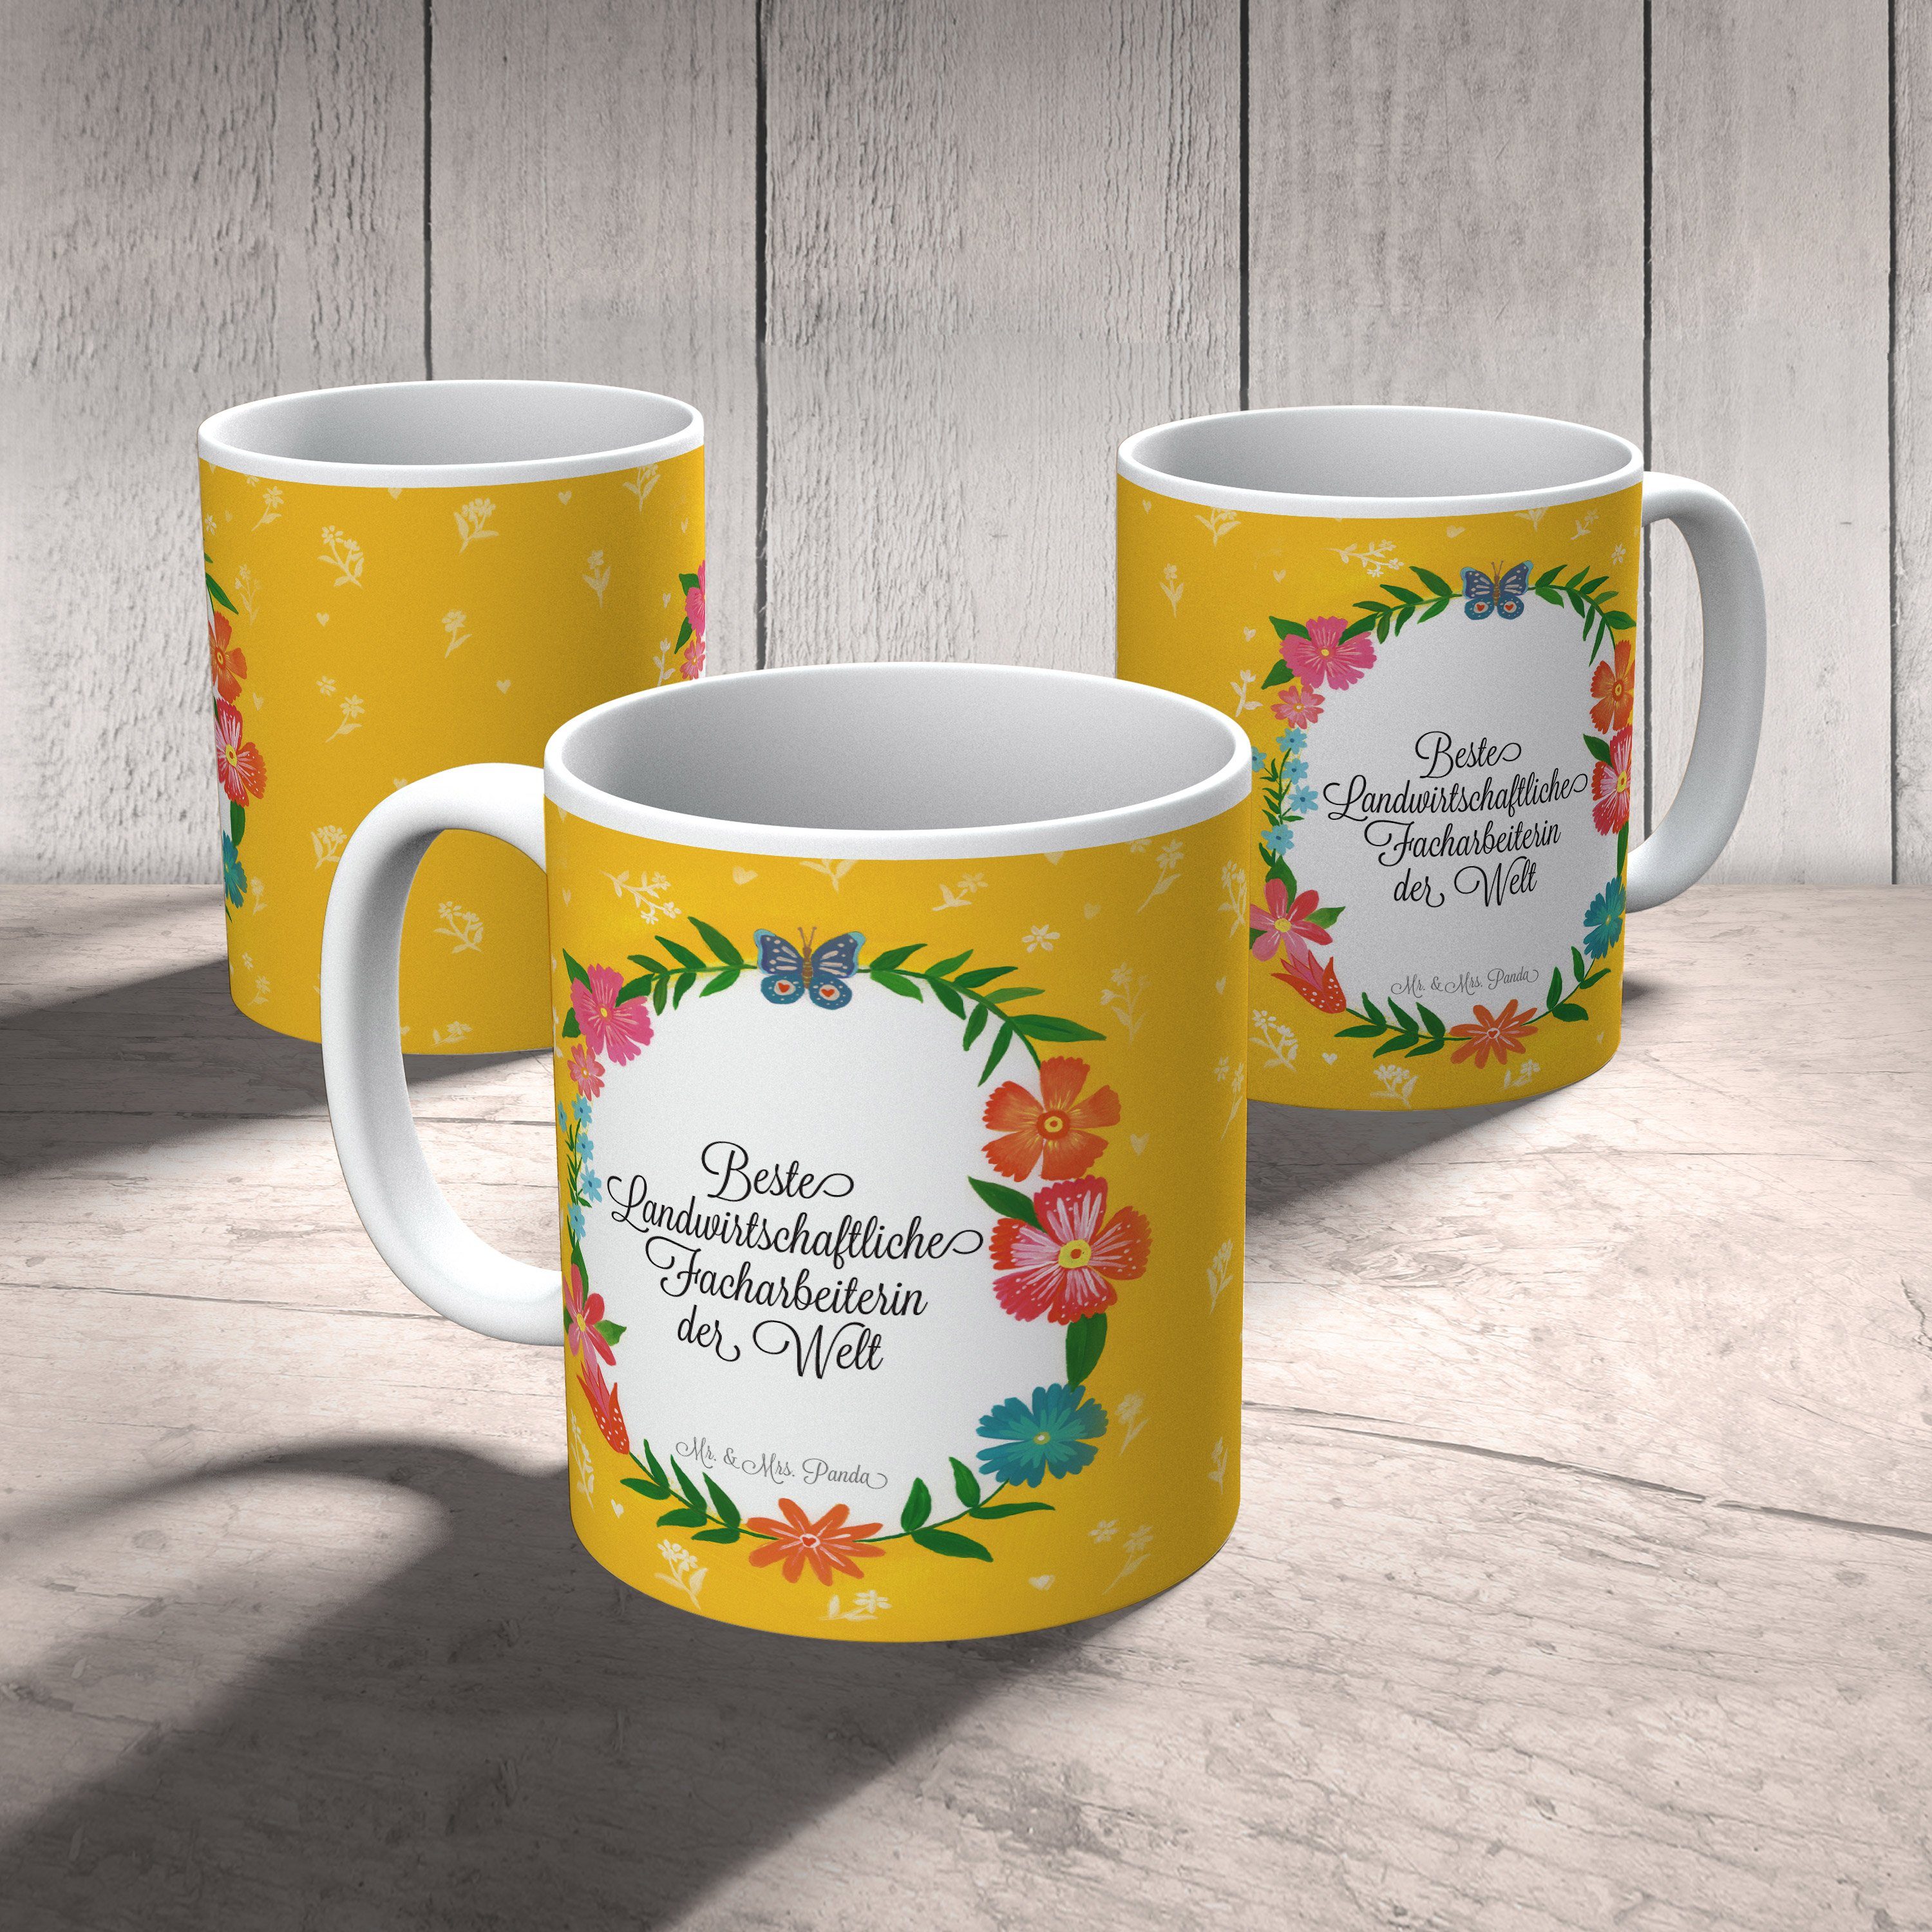 Geschenk, Kaffeebecher, Panda Mr. Facharbeiterin Mrs. Tasse & - Keramik Landwirtschaftliche Porzella,